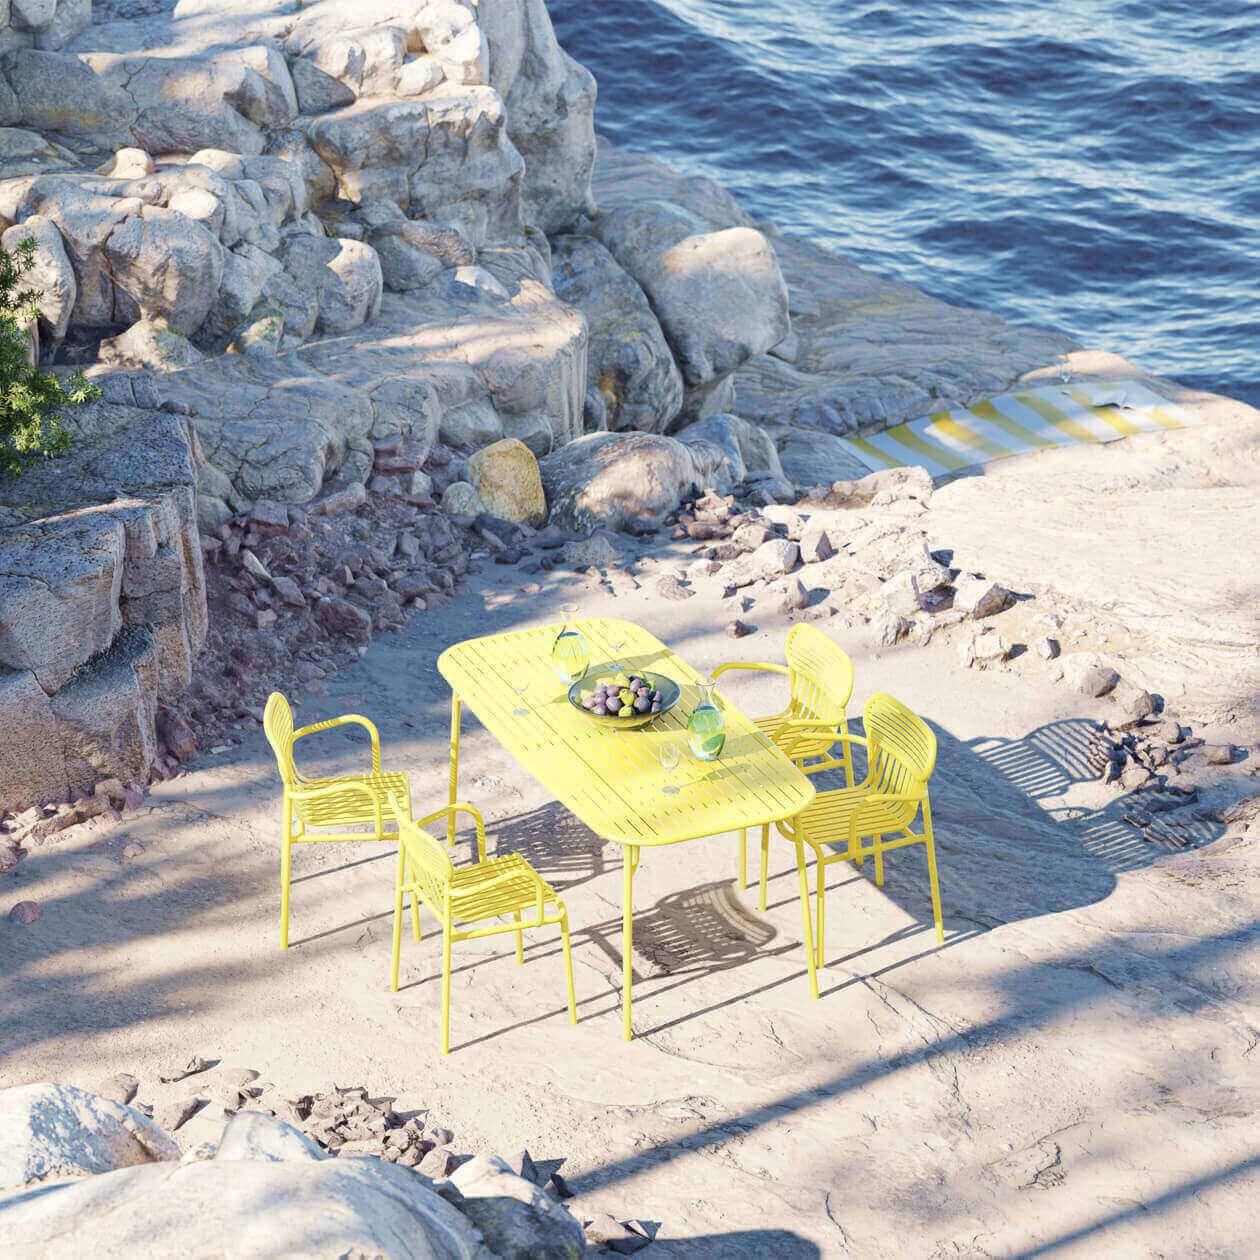 Week-End Tisch Large in Yellow präsentiert im Onlineshop von KAQTU Design AG. Gartentisch ist von Petite Friture